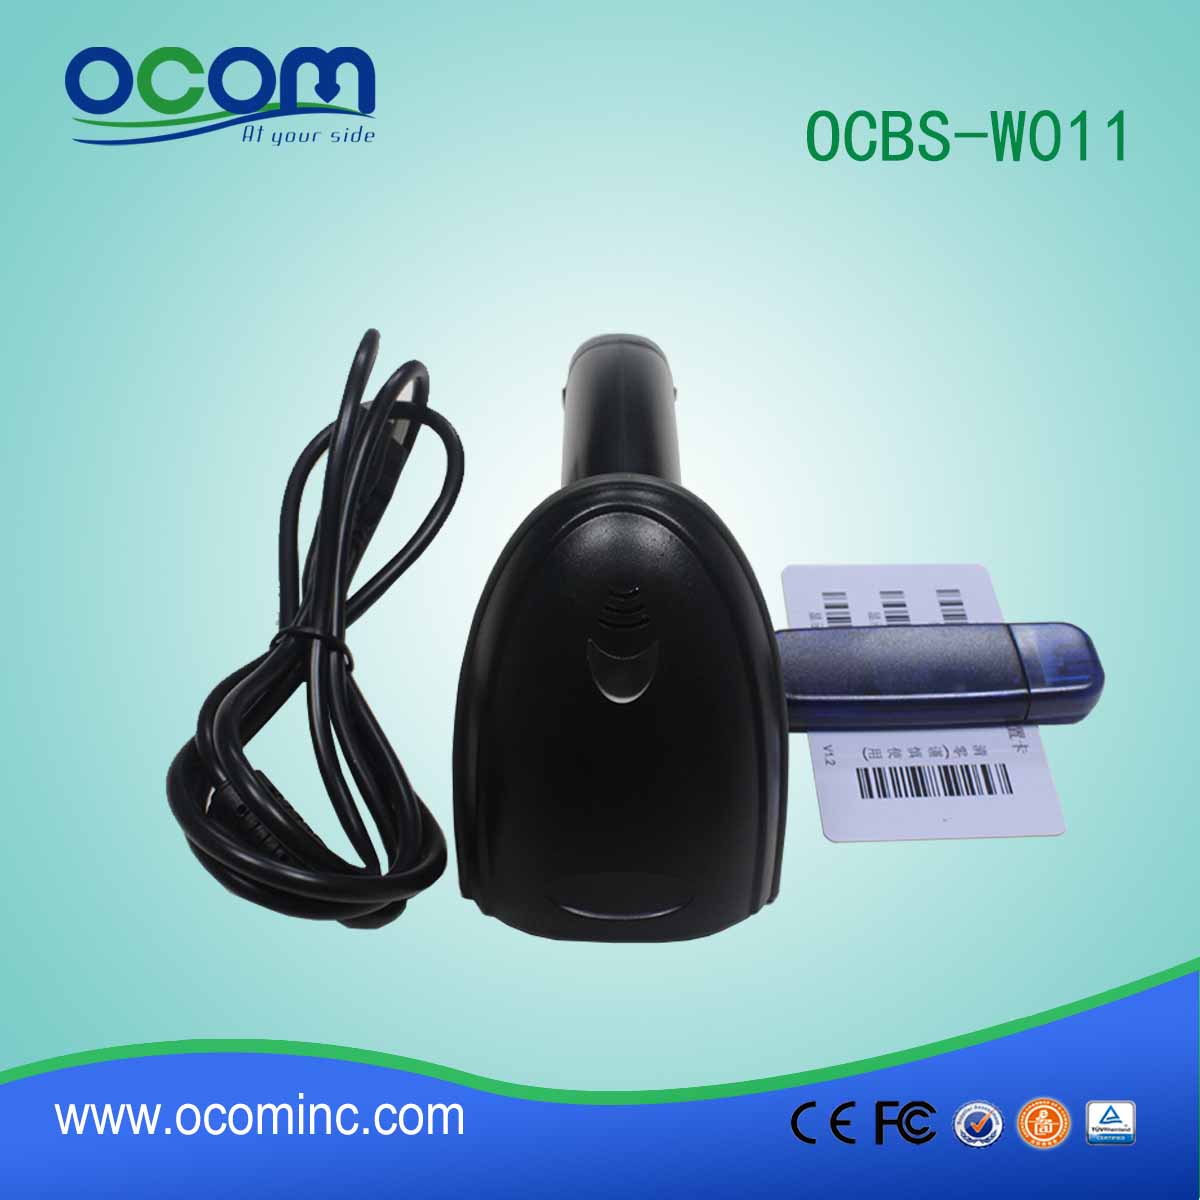 OCBs-W011 μίνι 433Mhz ασύρματο scanner barcode με δέκτη USB